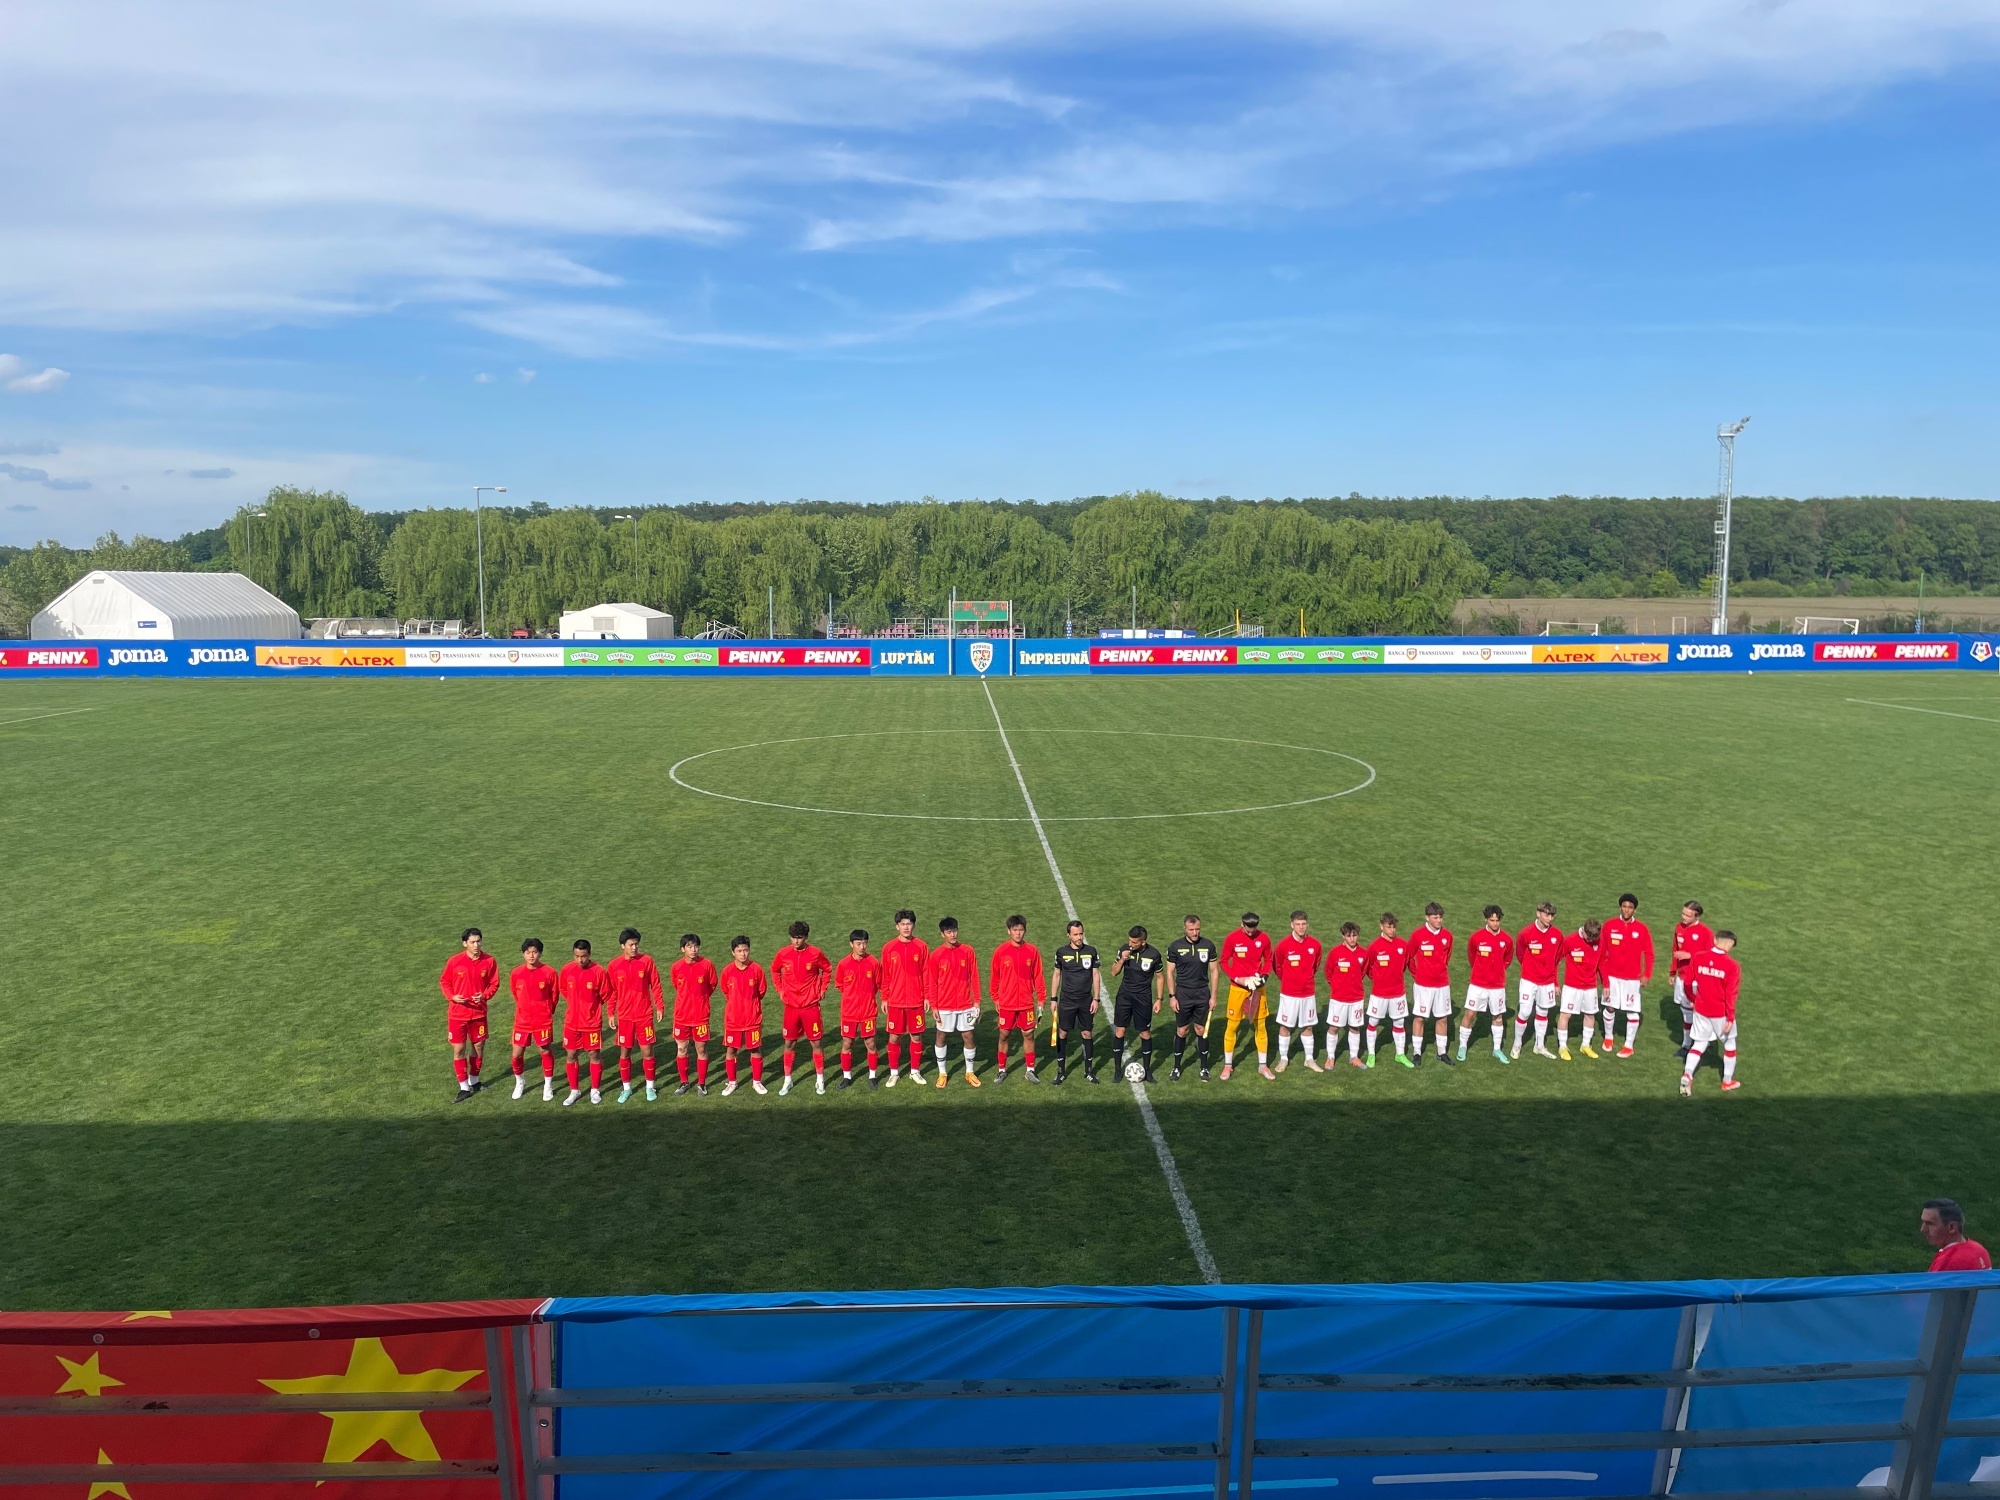 中国U16 对阵波兰U16 的比赛已经开始 球场当前位置比分10